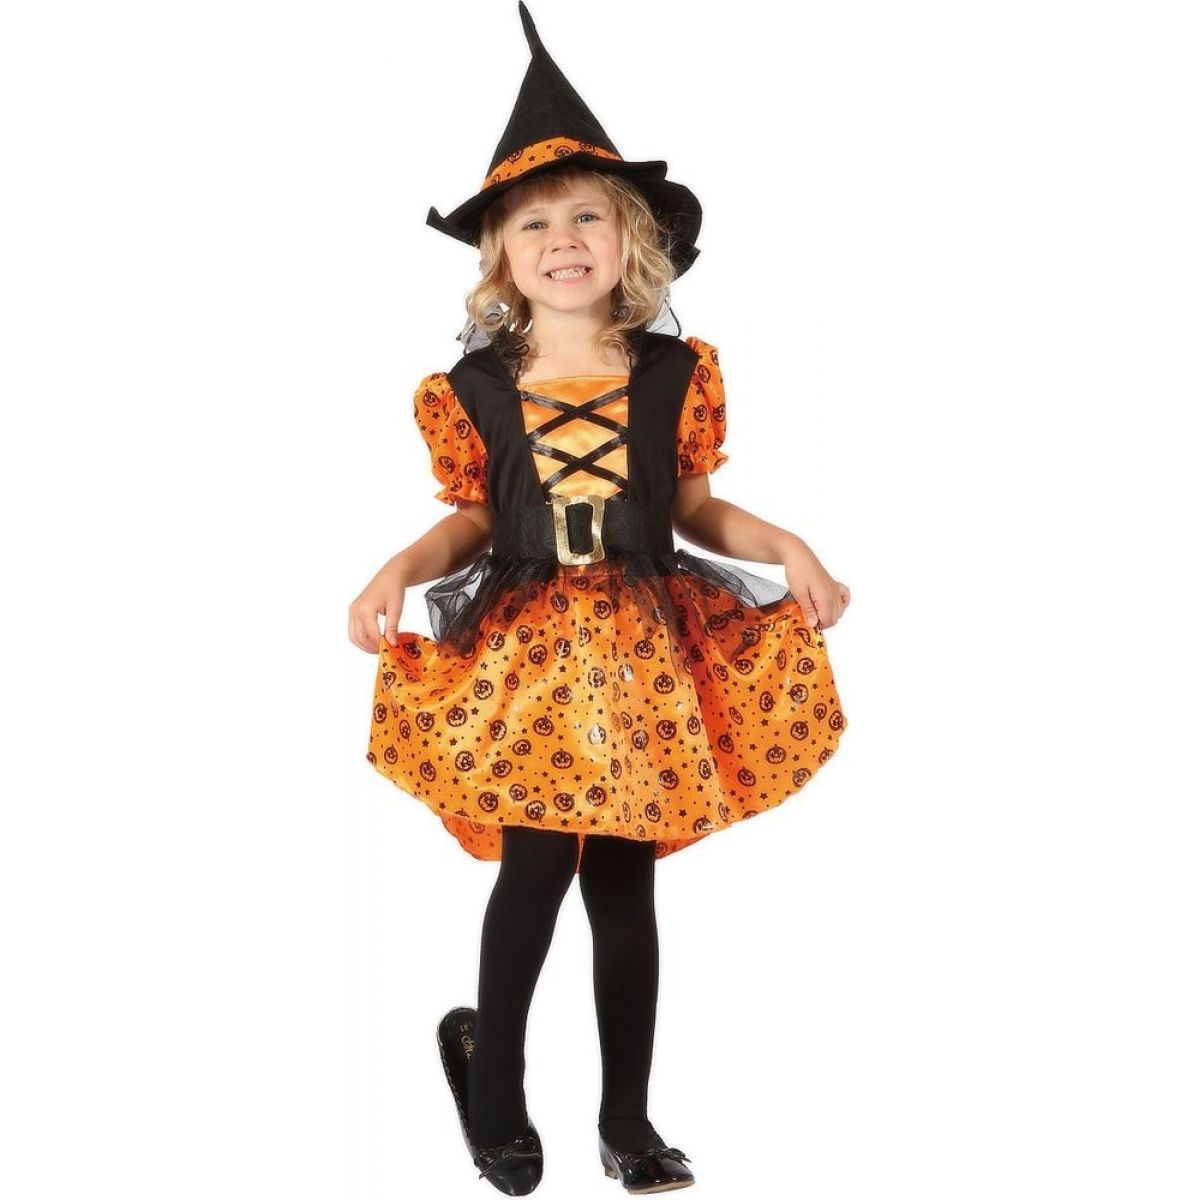 Made Dětský kostým Čarodějka oranžová 92-104cm